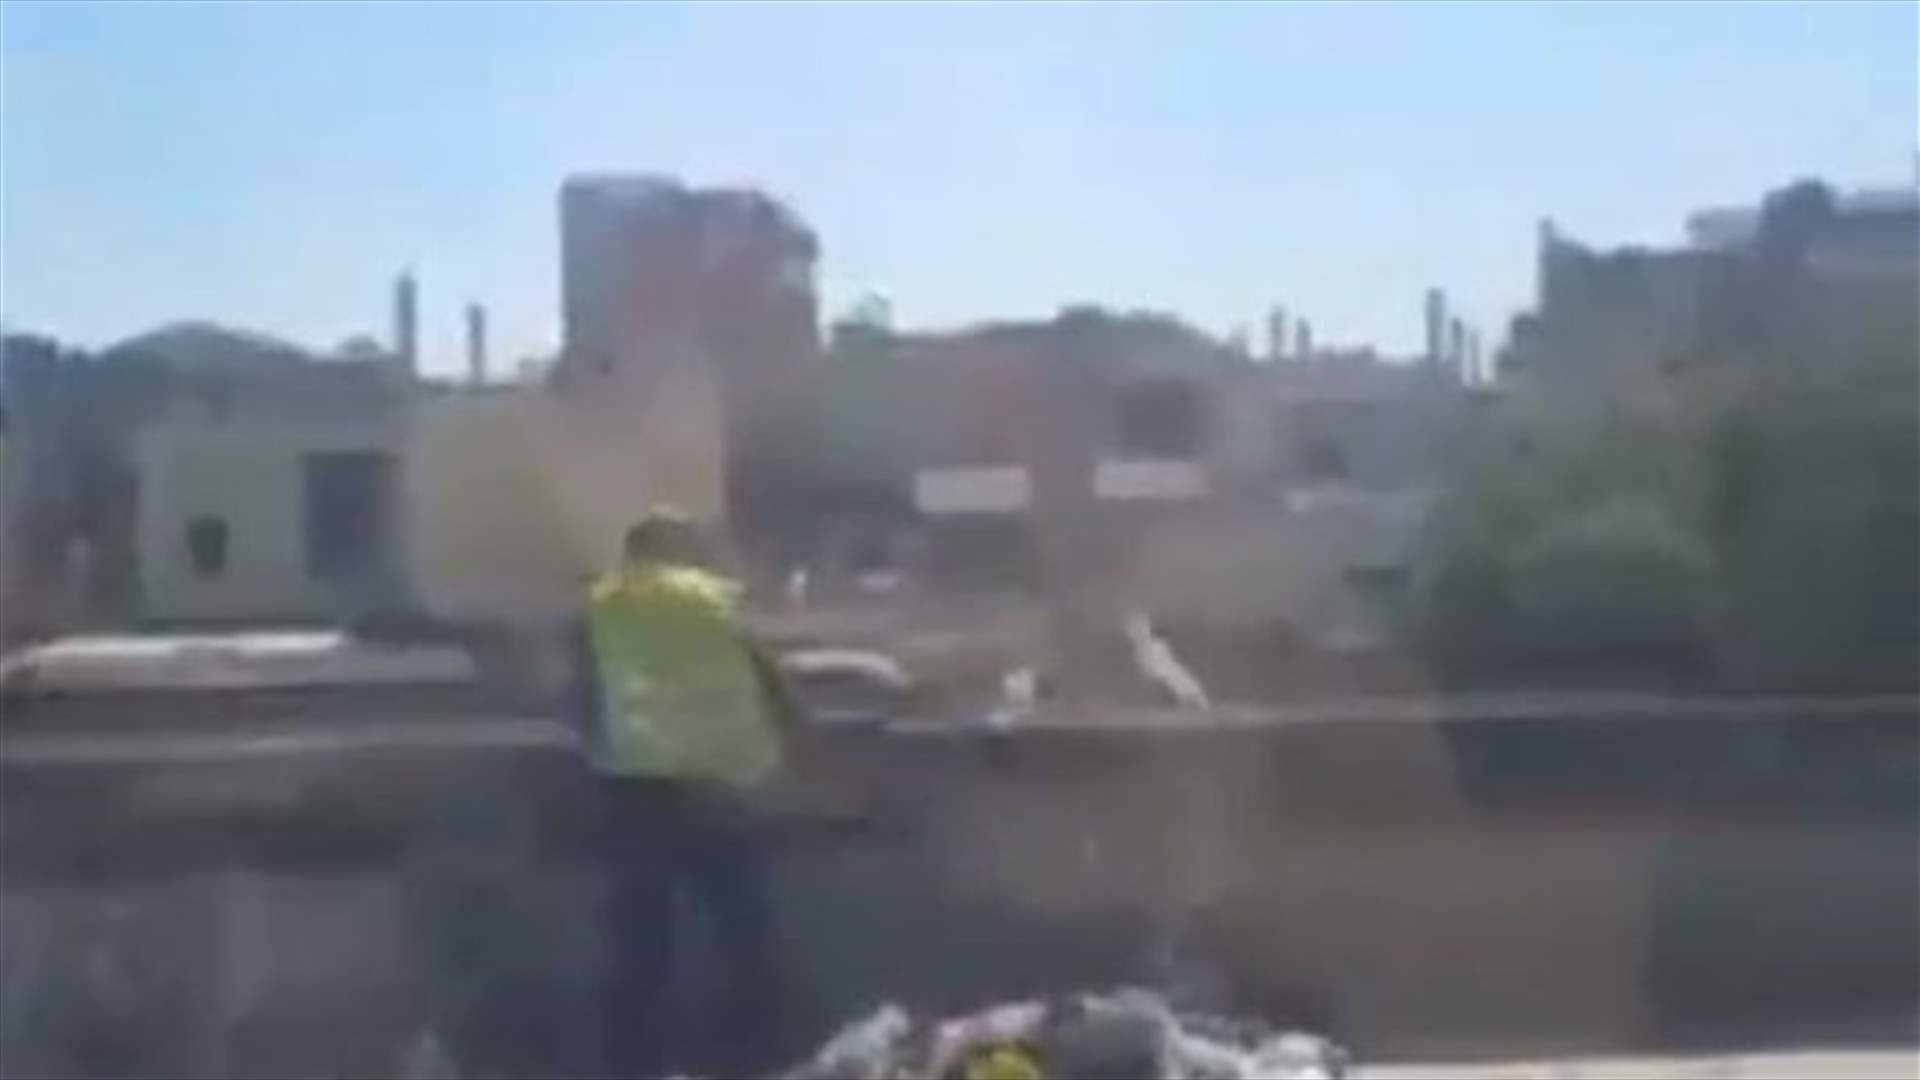 عامل نظافة يرمي نفايات في نهر بيروت... فهل تمّت محاسبته؟ (فيديو)